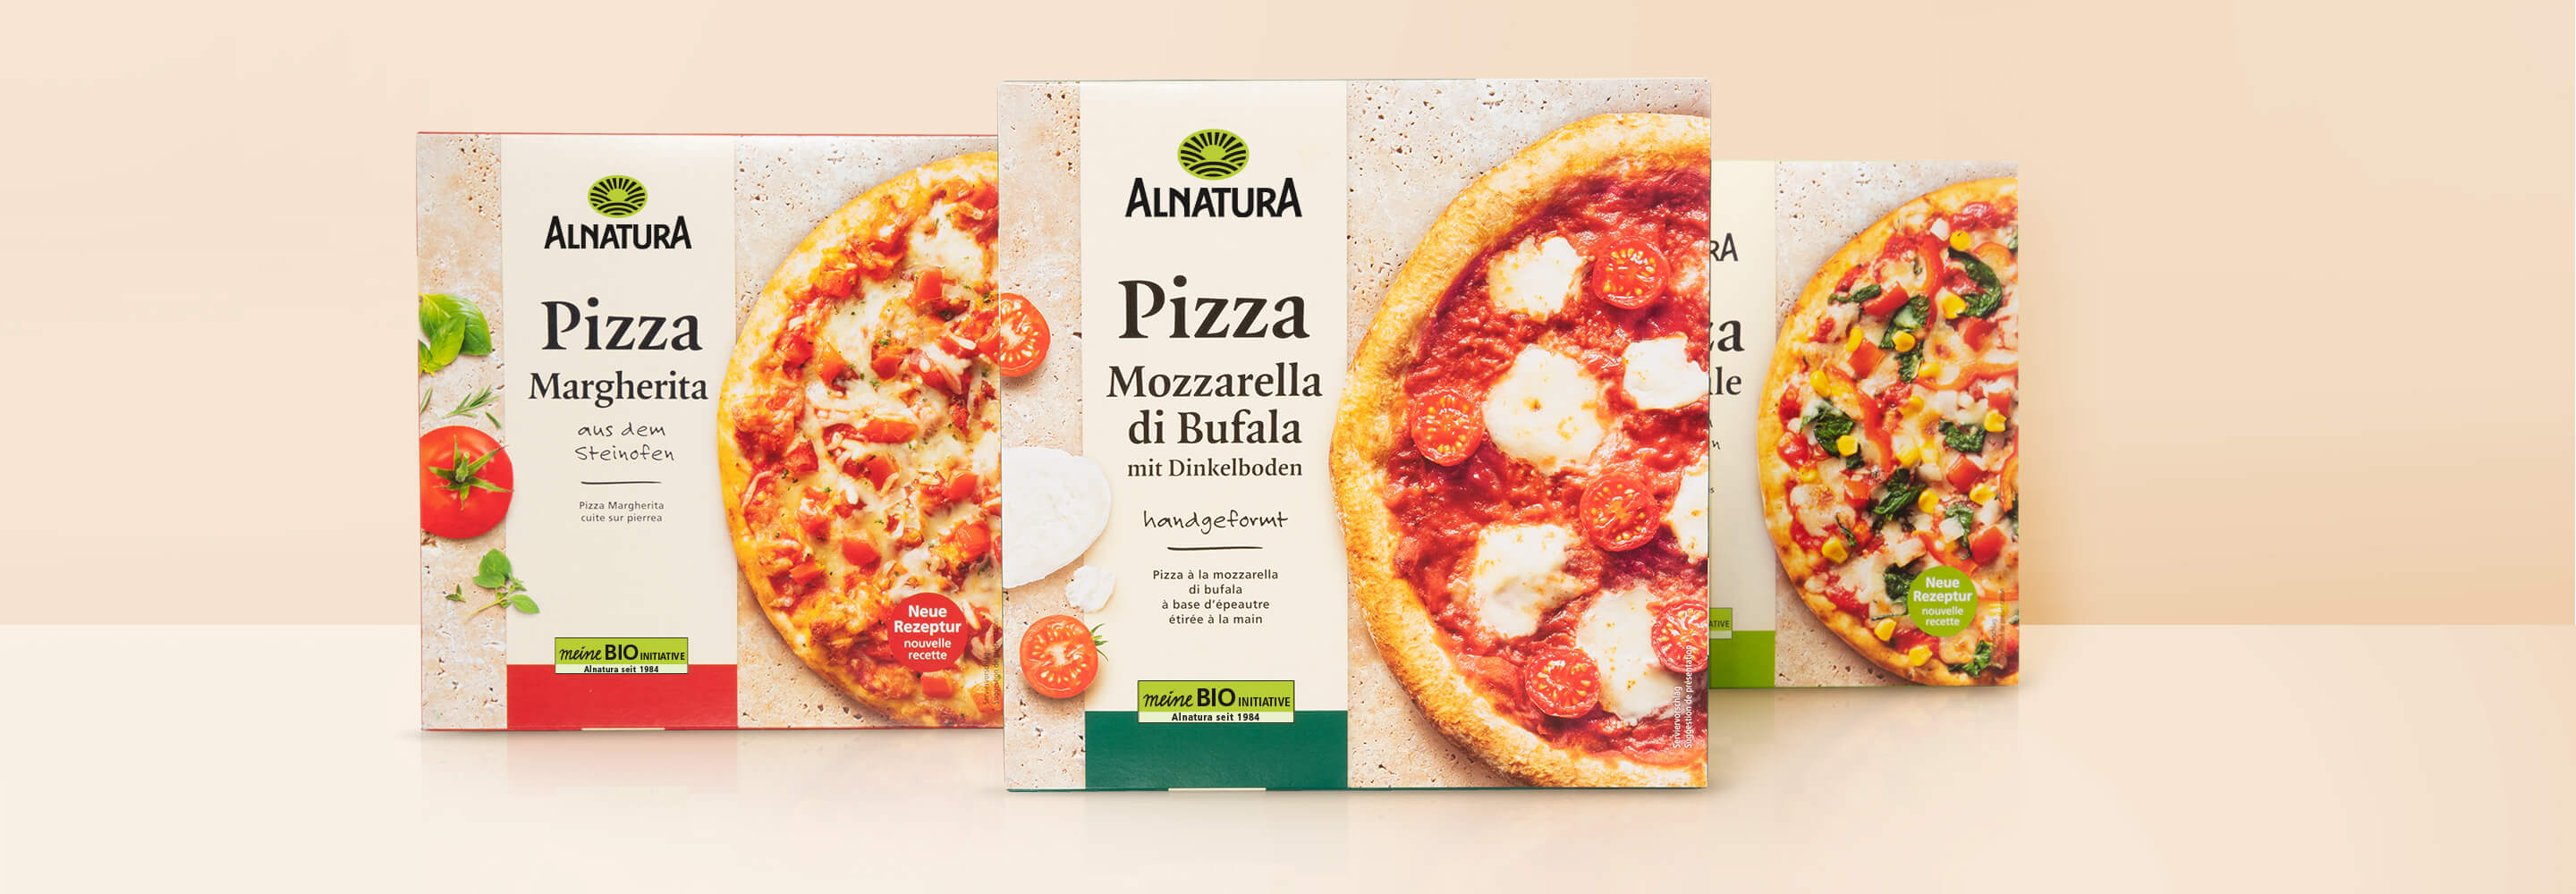 Alnatura Pizza Relaunch